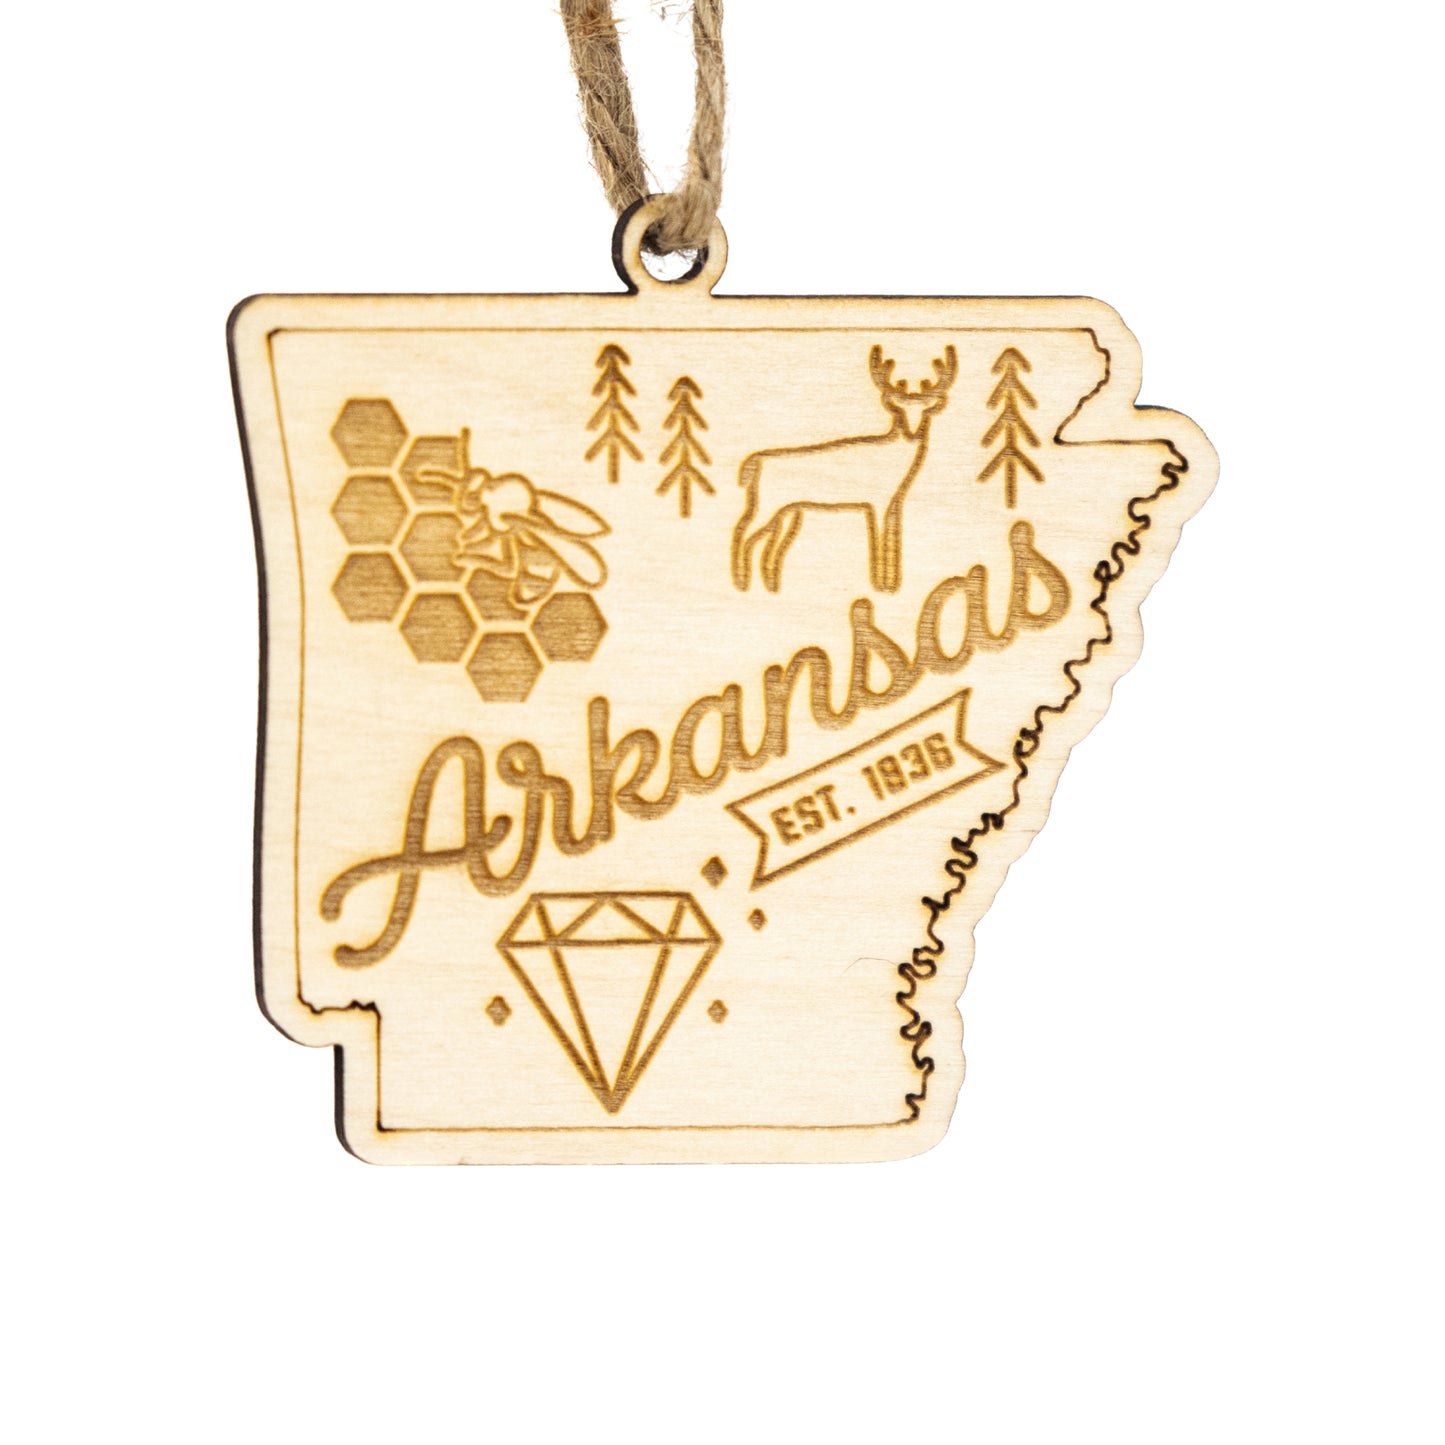 Arkansas Home Town Ornament